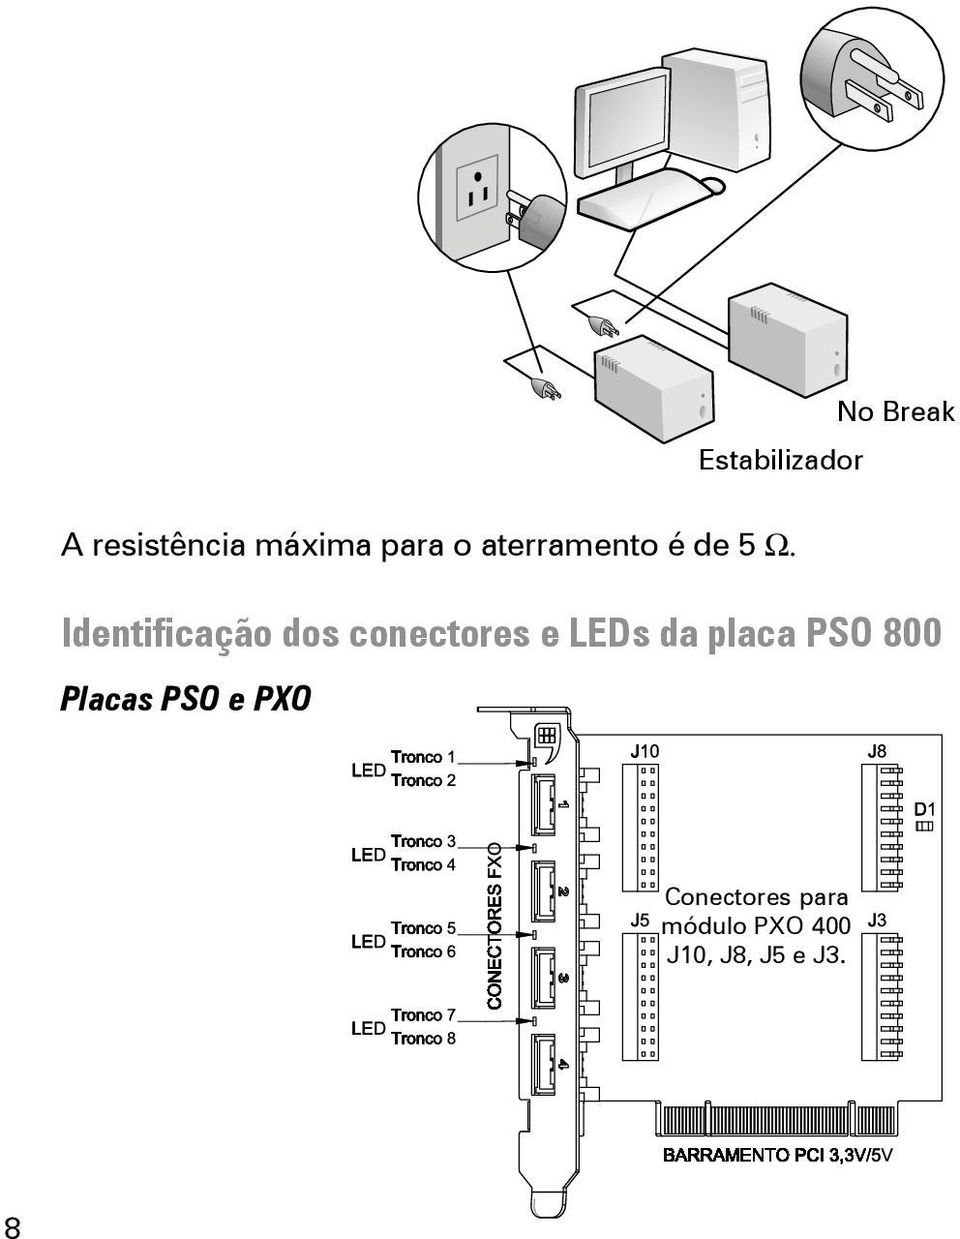 Identificação dos conectores e LEDs da placa PSO